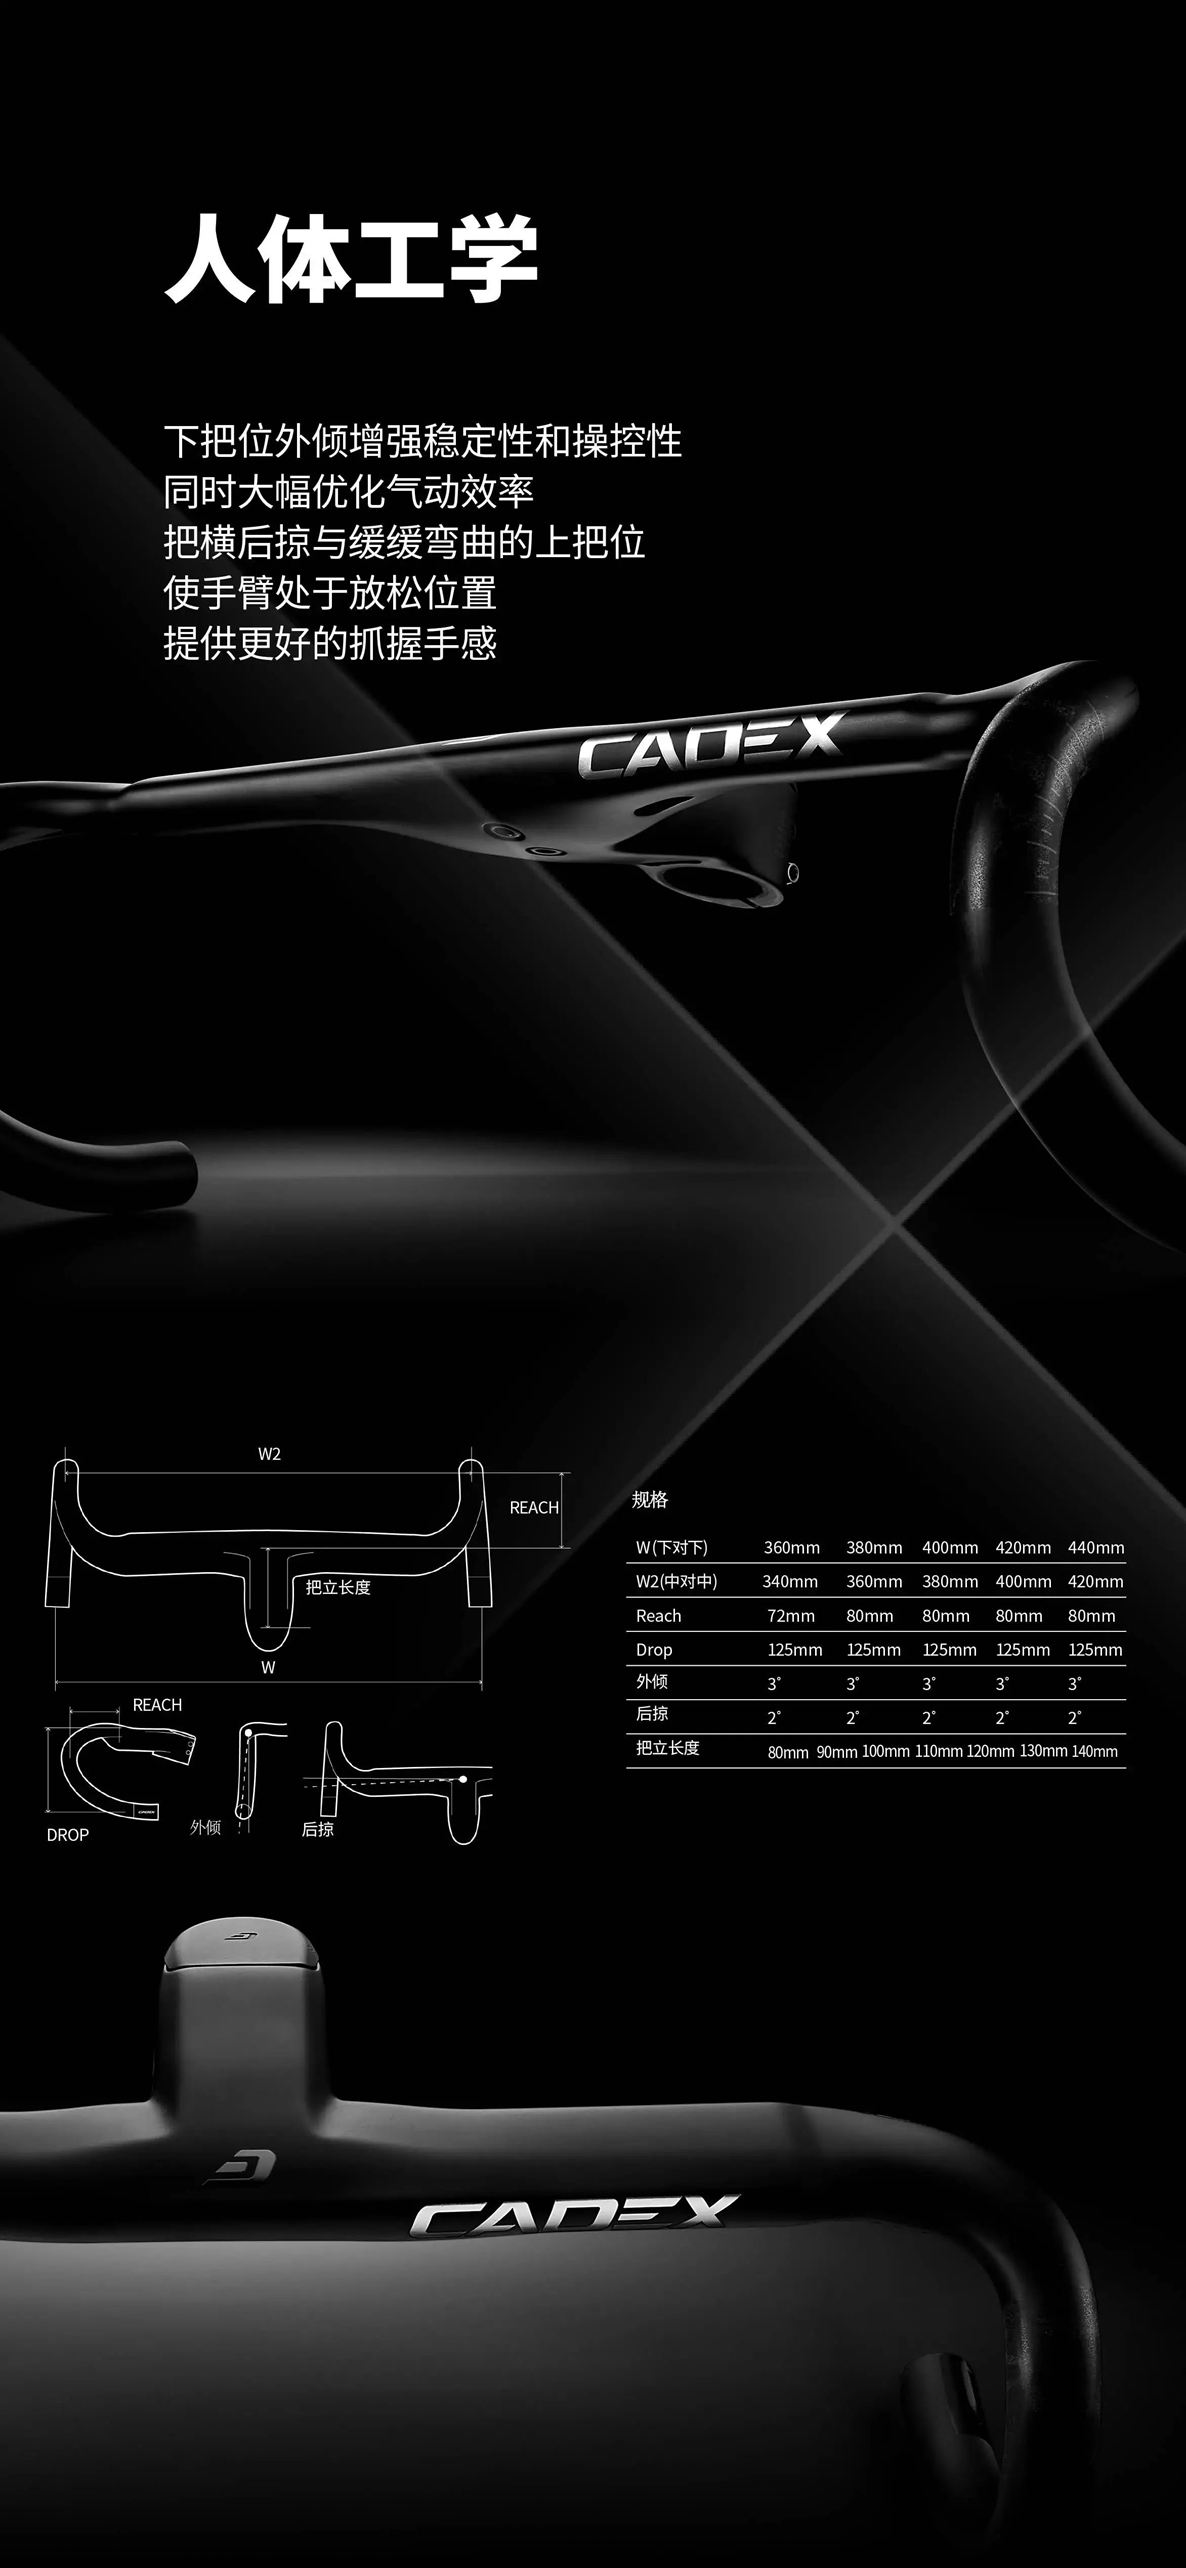 新品盛放 | CADEX Max 40轮组领衔上市